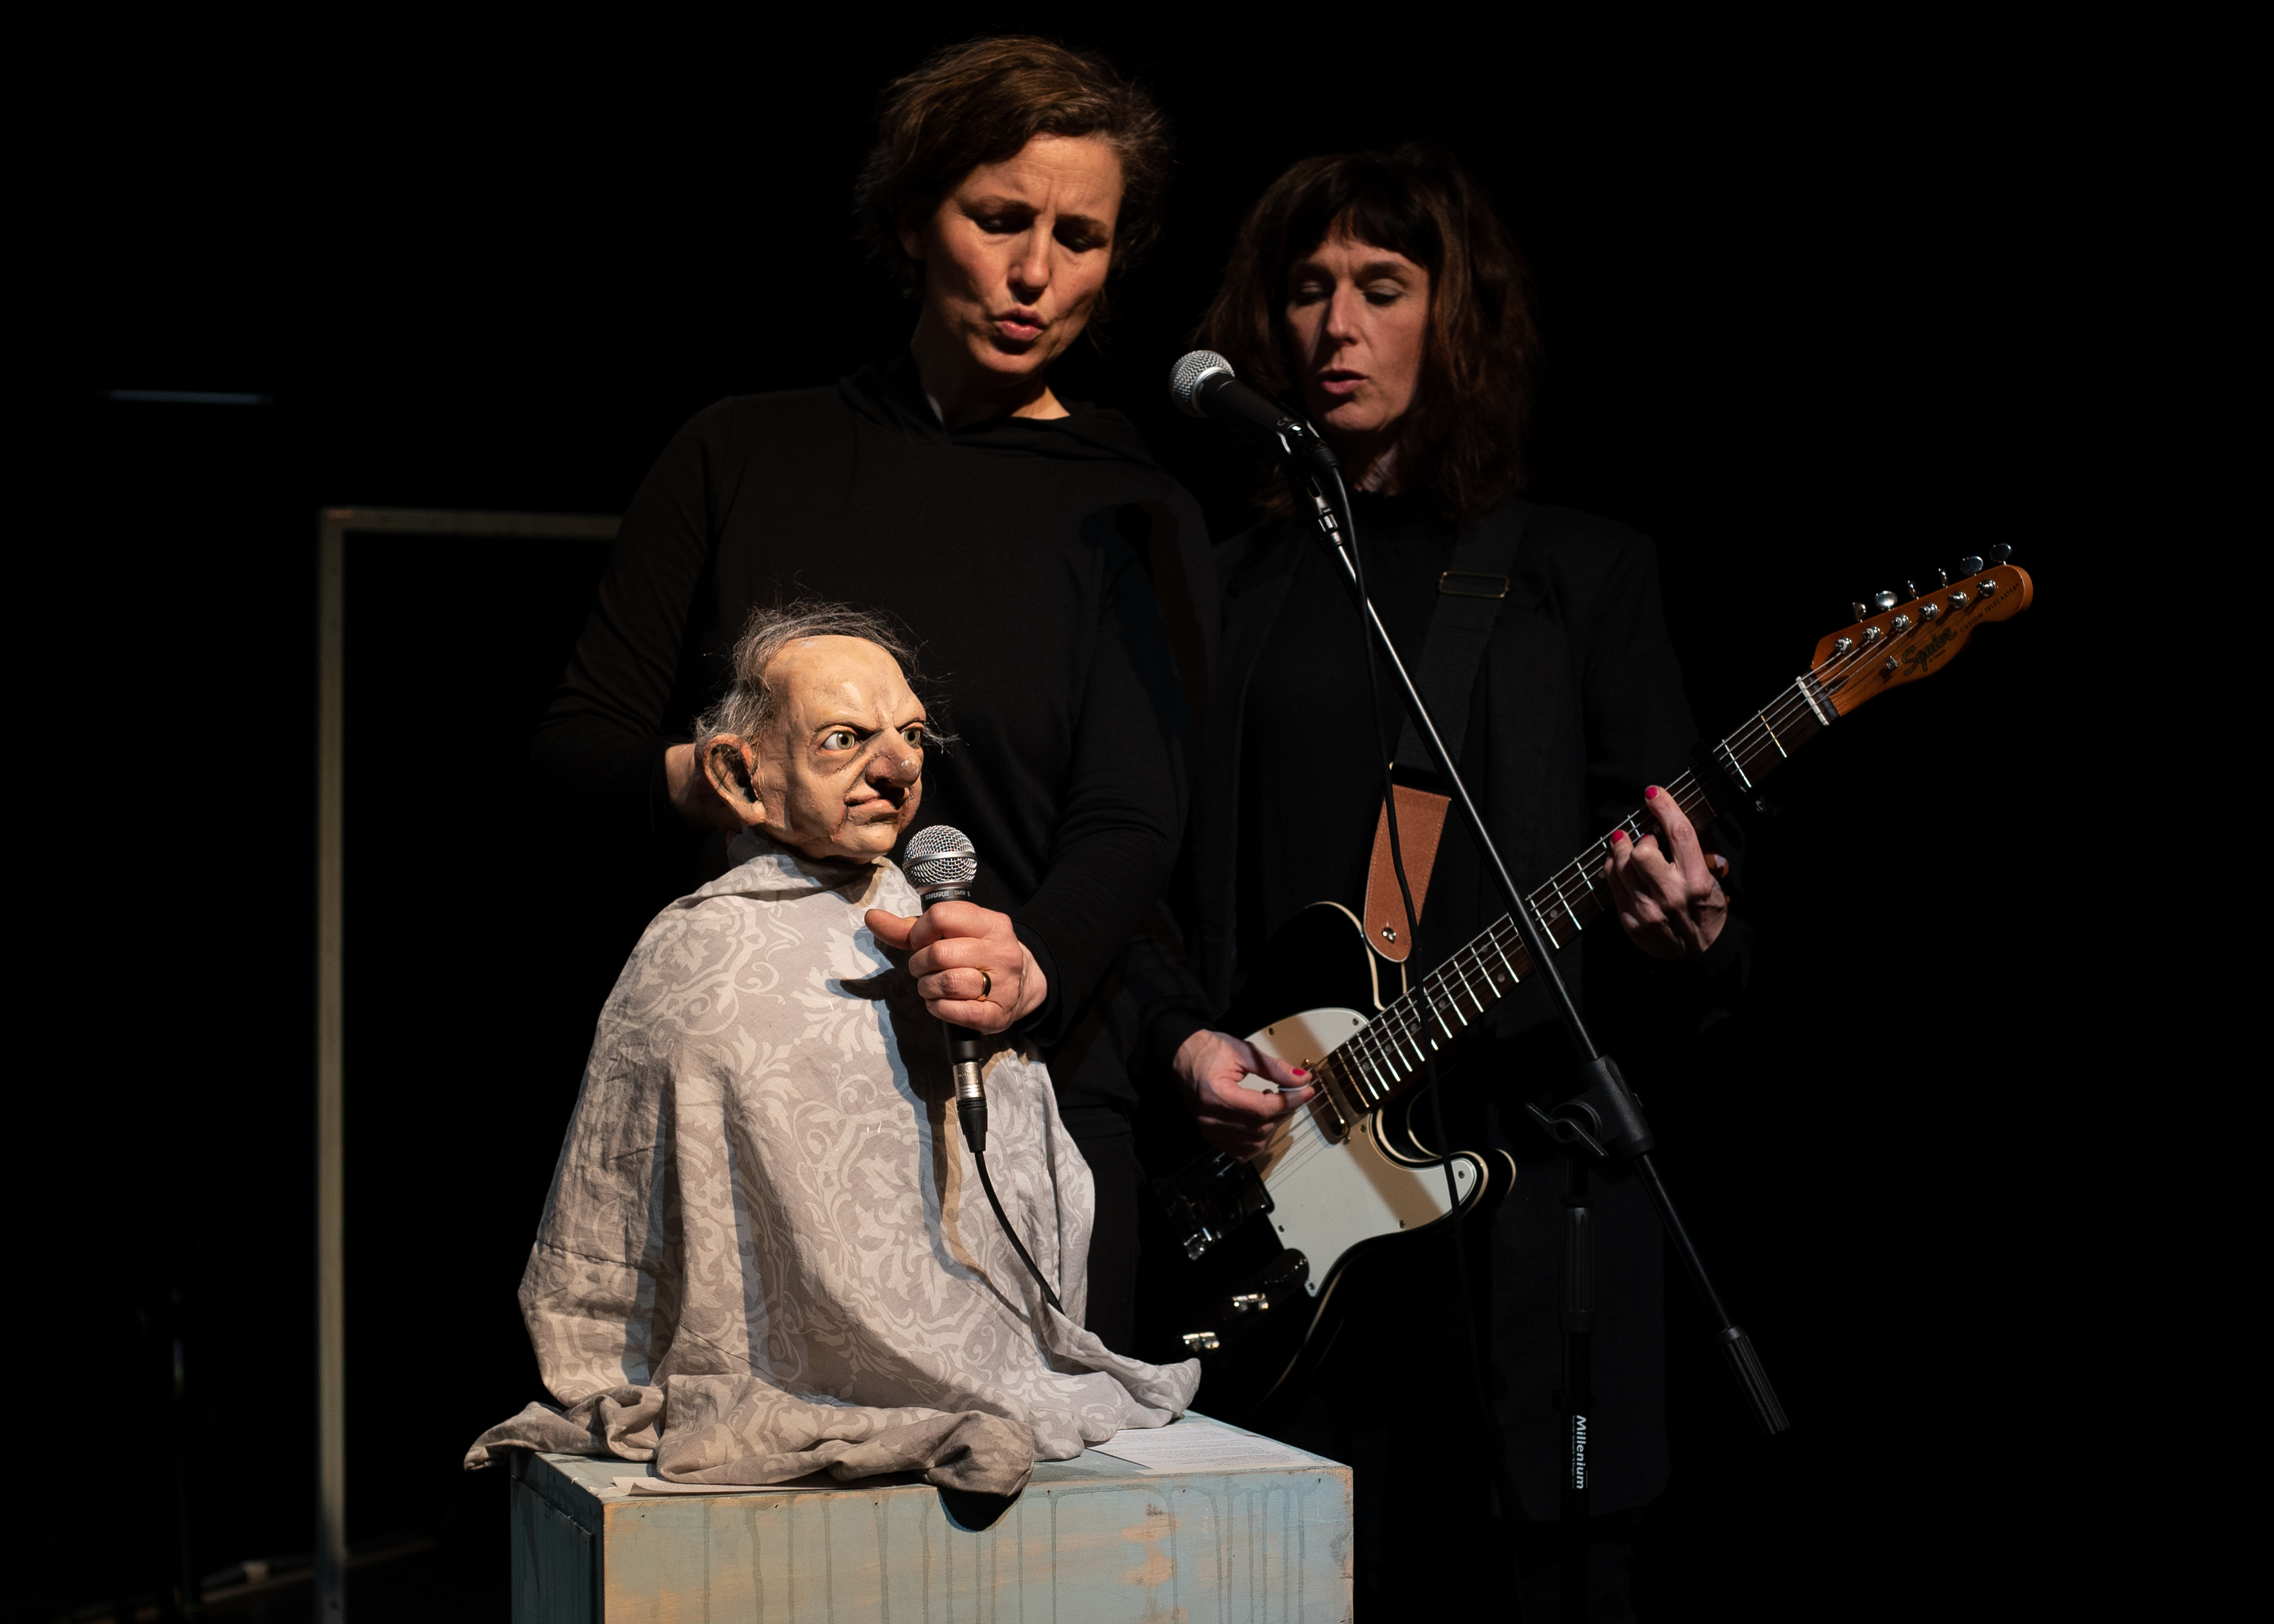 Die Puppe in Form eines alten Mannes sitzt auf einem kleine Podest und hält sich ein Mikrofon vors Gesicht. Im Hintergrund sind zwei schwarzgekleidete Puppenspielerinnen. Eine singt, die andere spielt E-Gitarre.